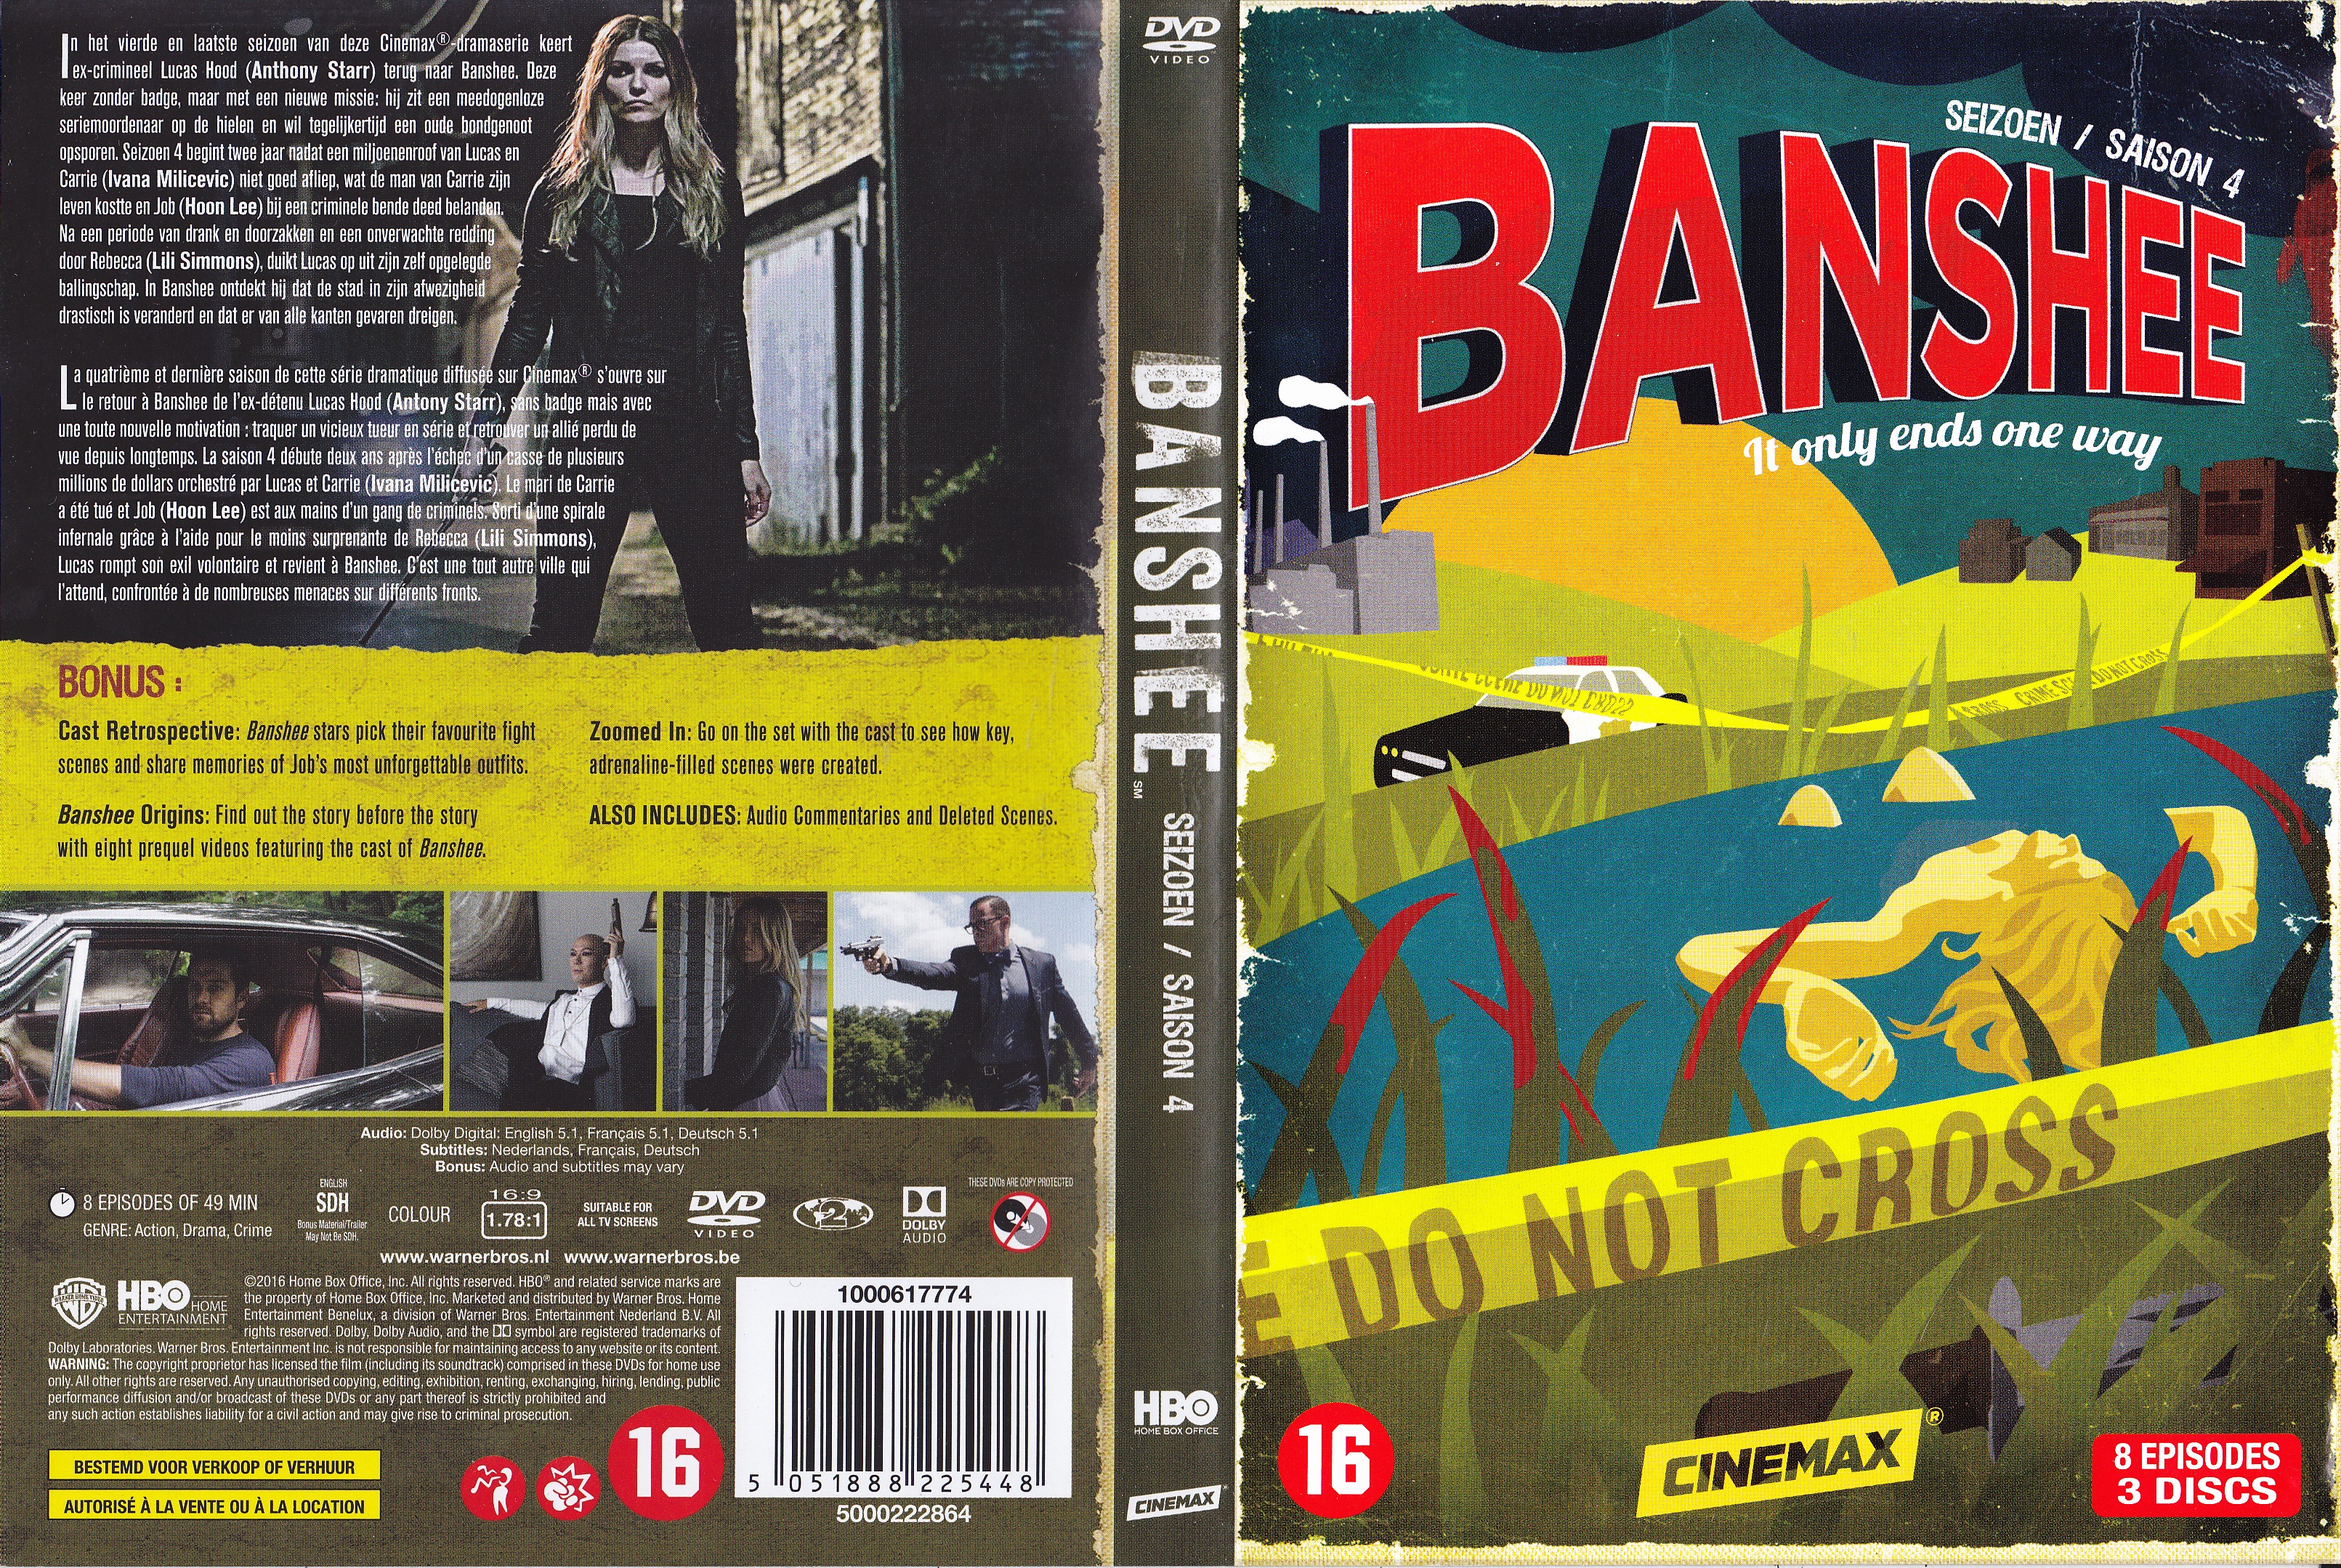 Jaquette DVD Banshee saison 4